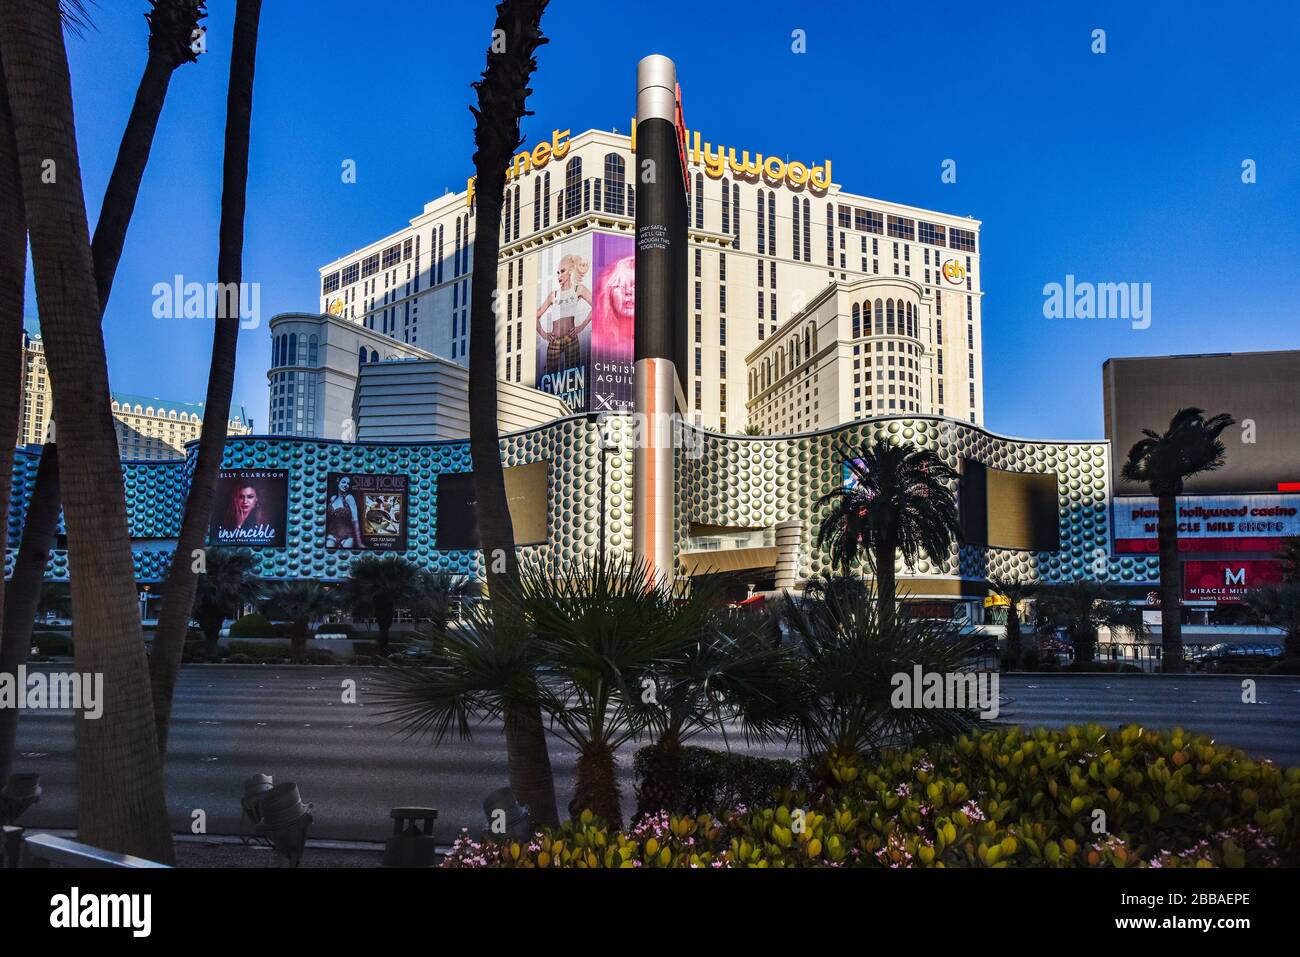 Eine Woche nach der Schließung in Las Vegas wegen Coronavirus ist der Strip ziemlich leer. Keine Menschen auf den Straßen und alles ist geschlossen. Stockfoto